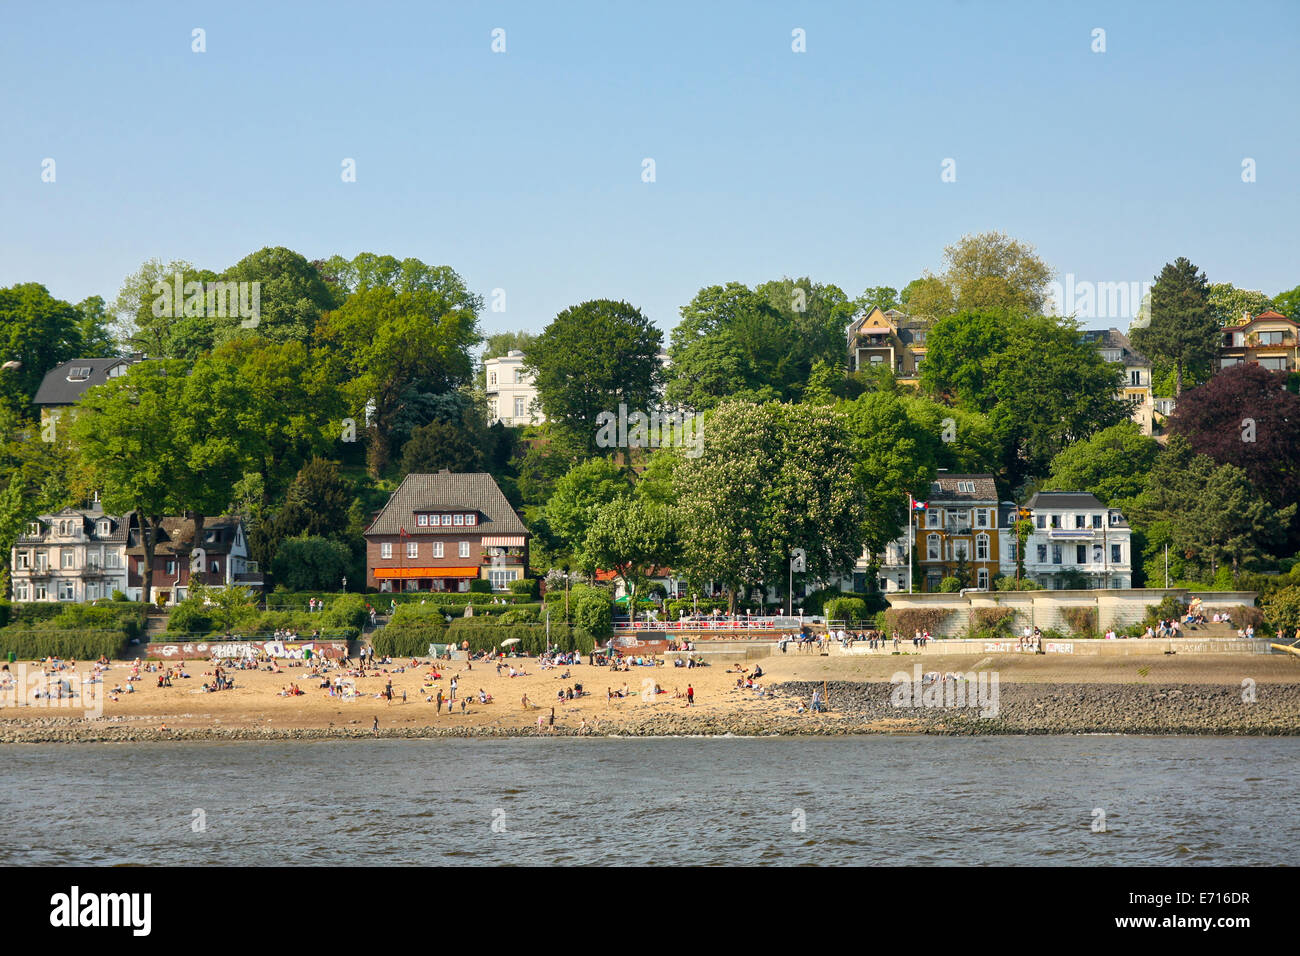 Germany, Hamburg, Elbstrand, Beach at the Elbe river Stock Photo